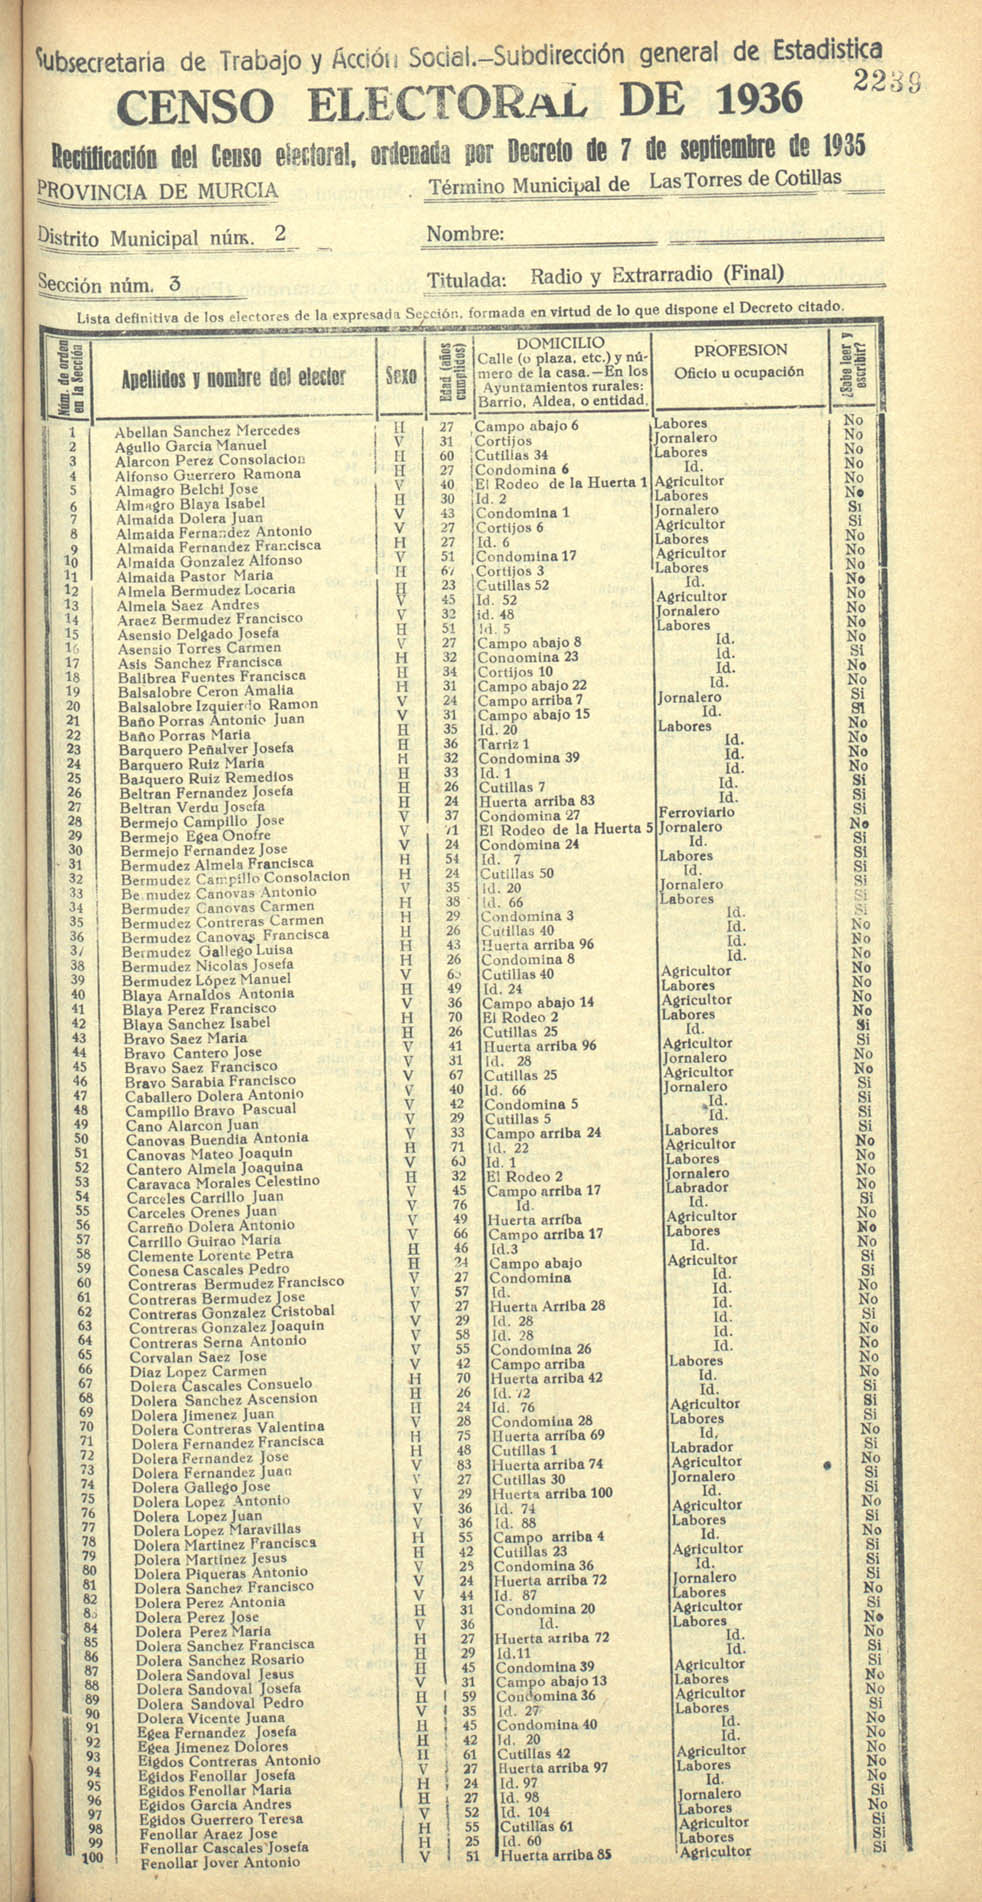 Censo electoral provincial de 1936. Las Torres de Cotillas. Distrito 2ª. Sección 3ª, Radio y Extrarradio (final)